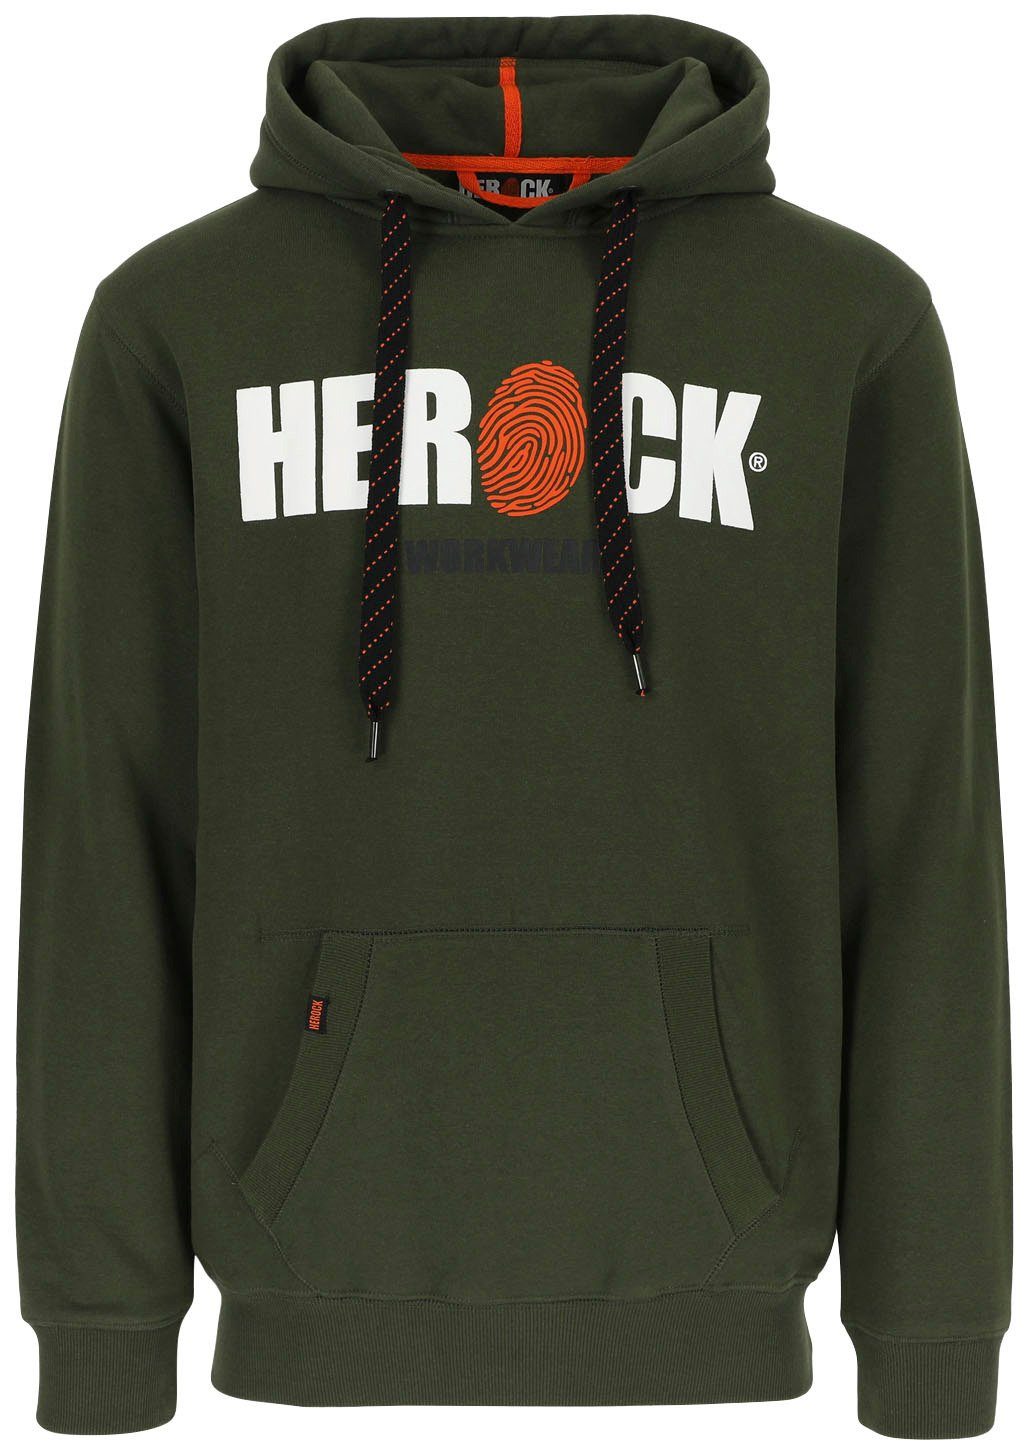 Herock Hoodie HERO Mit Herock®-Aufdruck, Kangurutasche, sehr angenehm und  weich